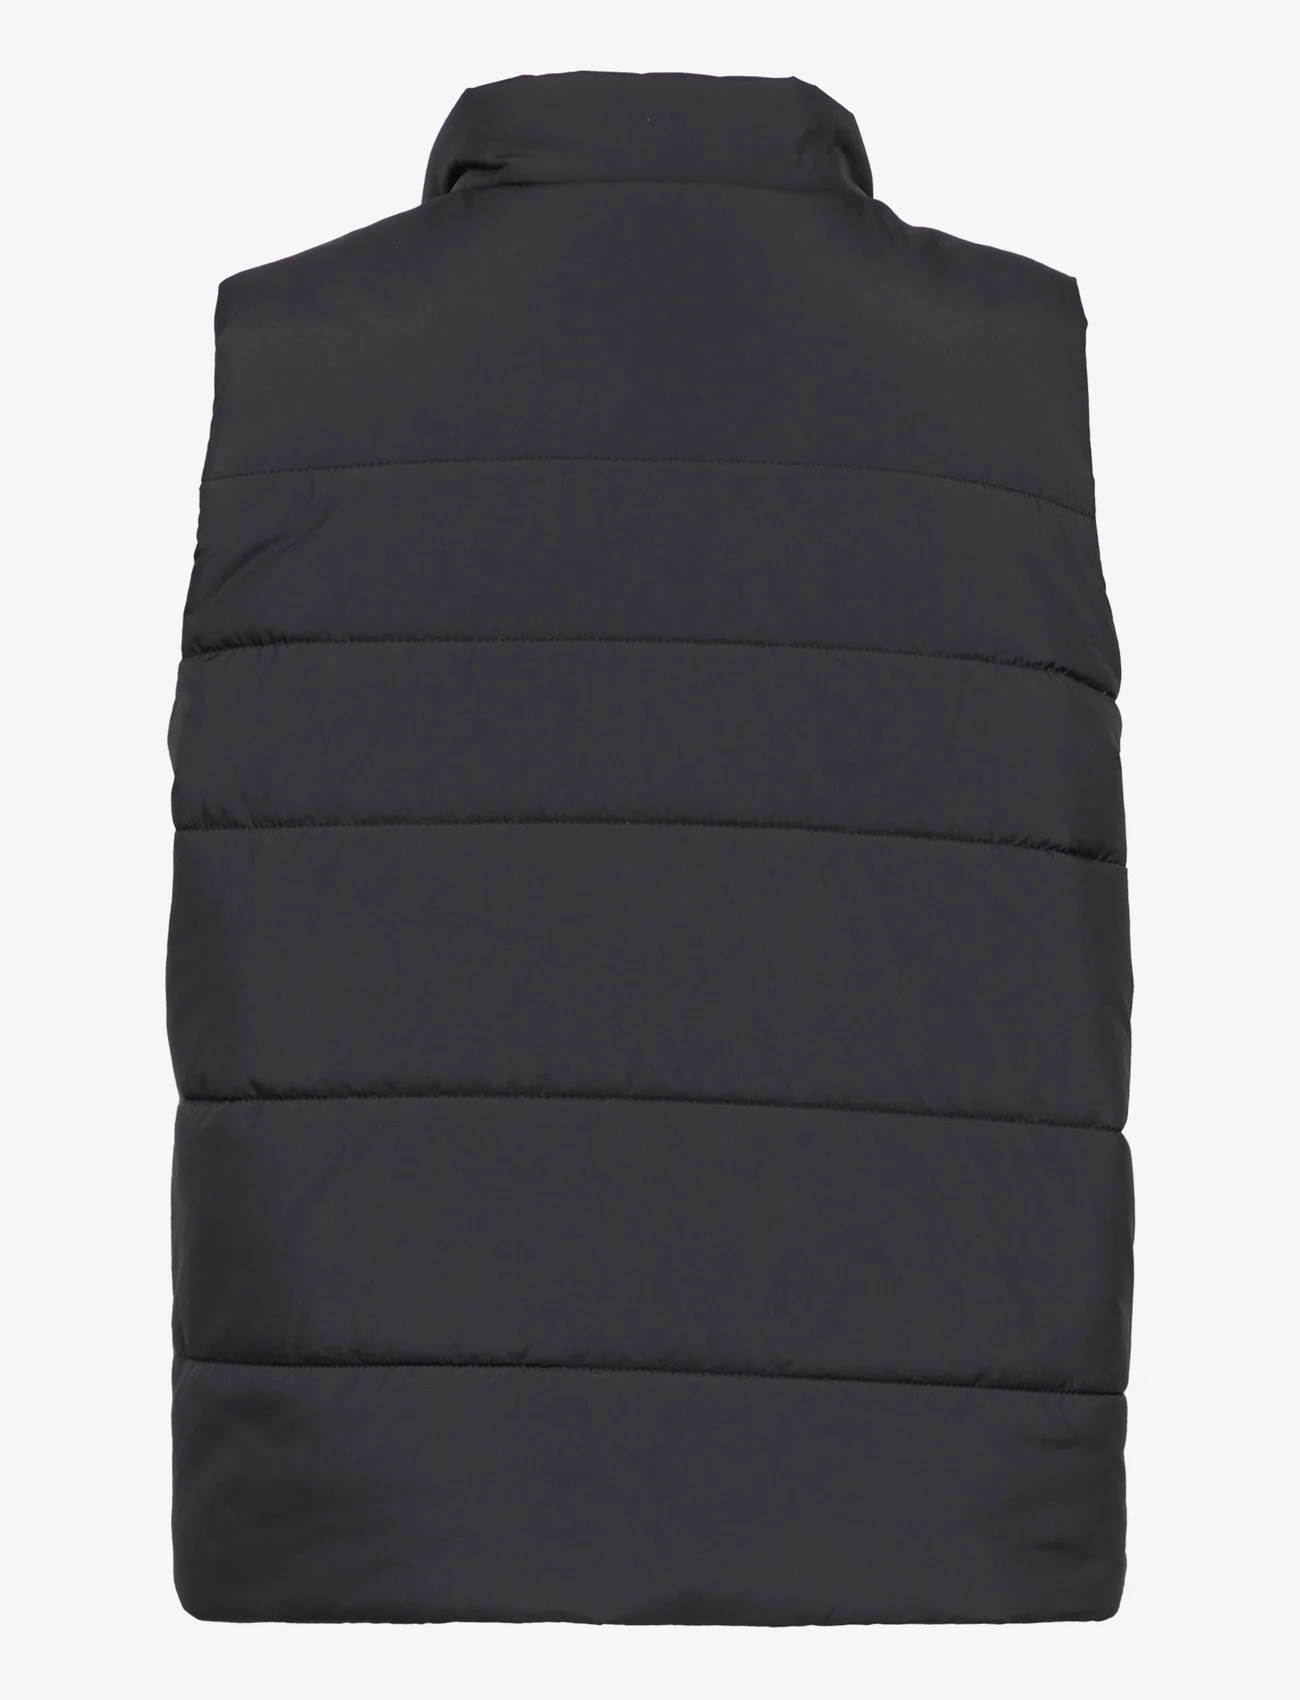 adidas Sportswear - JK PAD VEST - kinder - black - 1